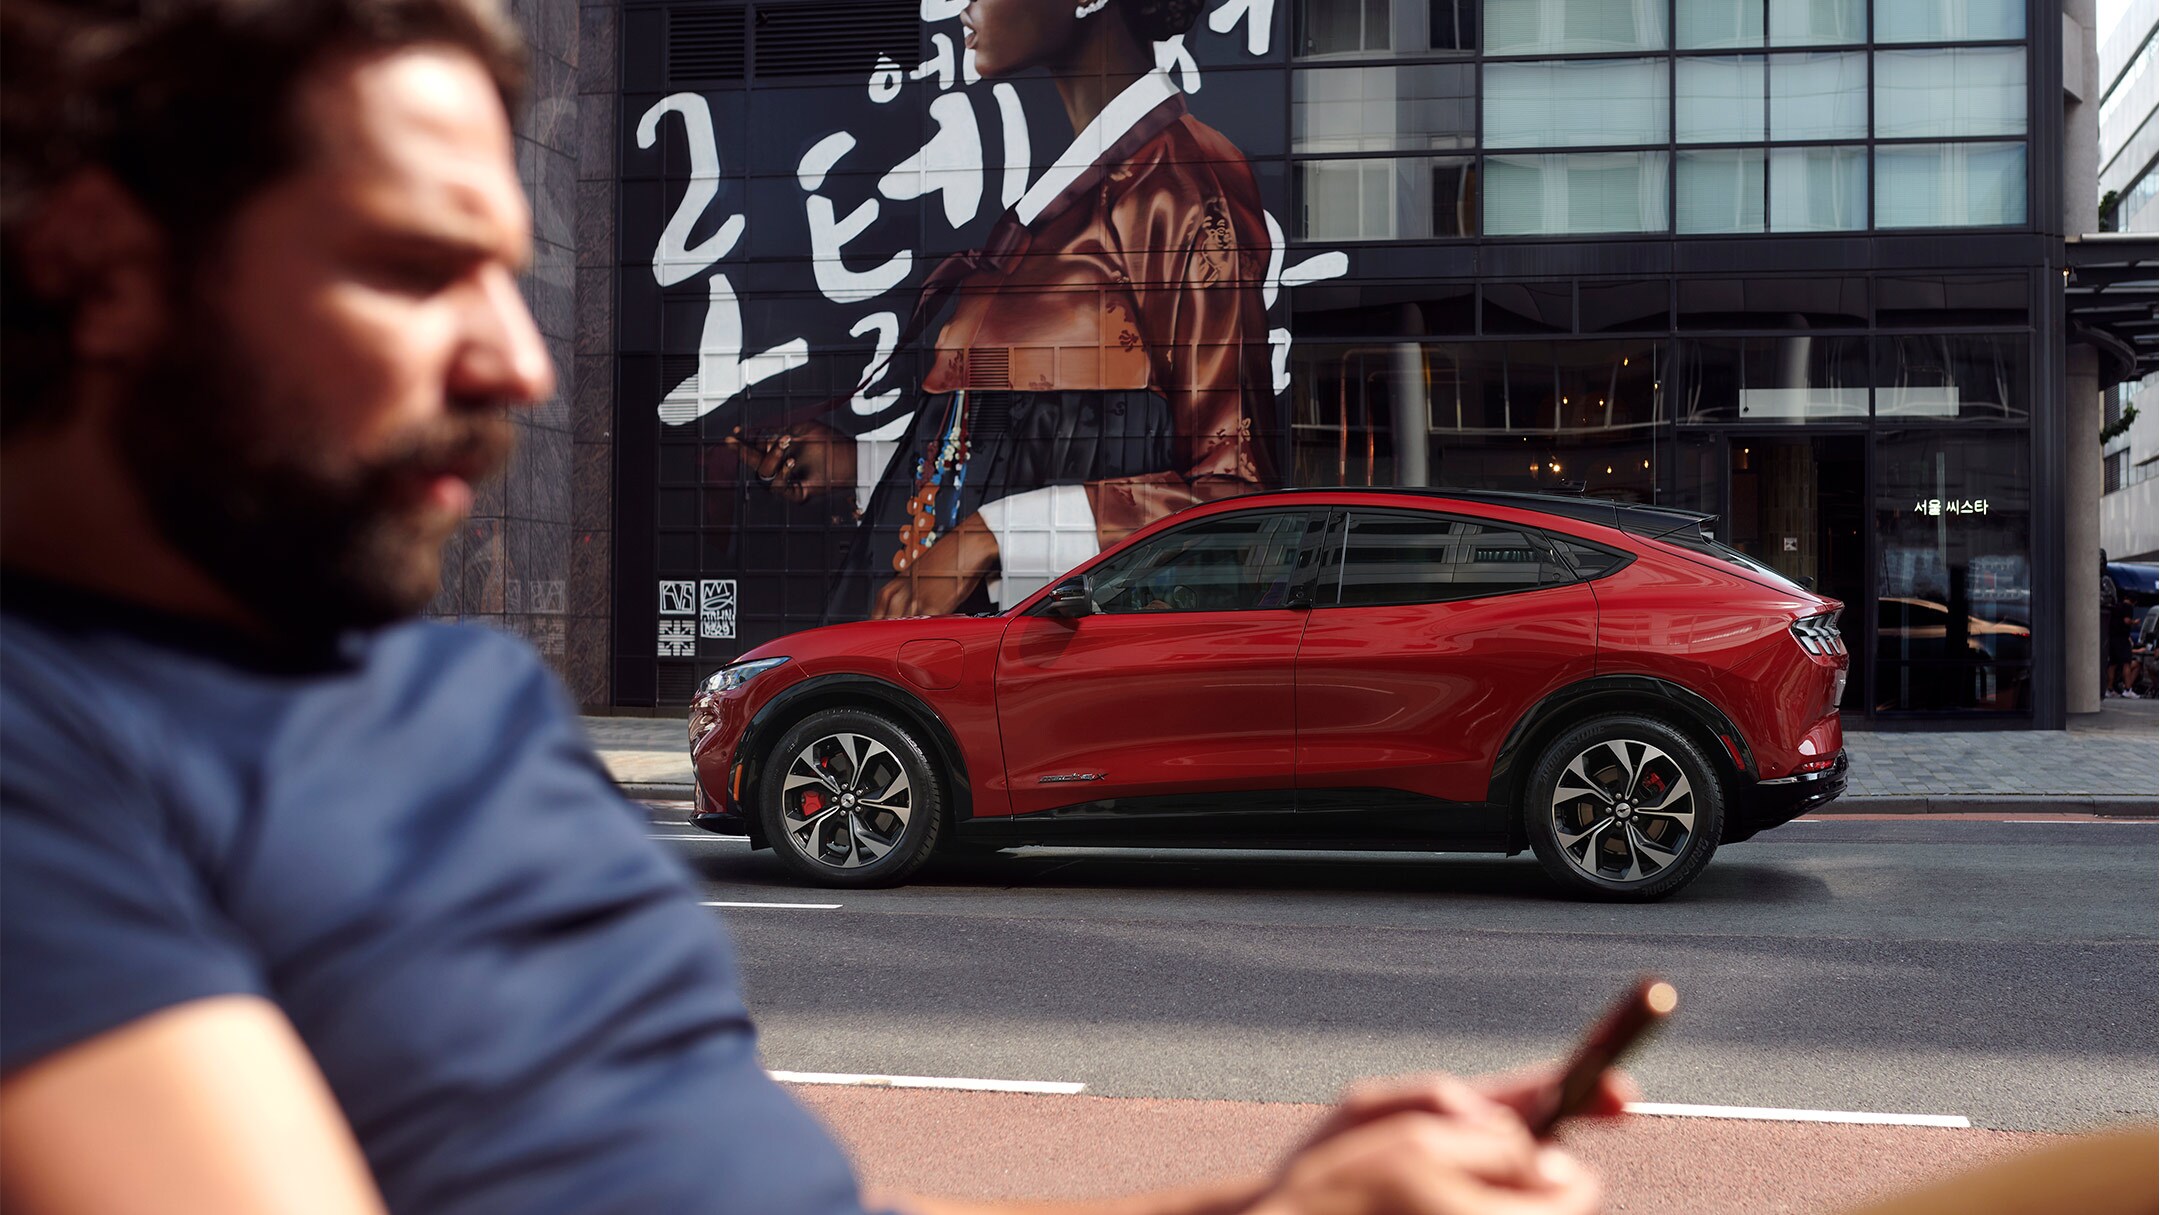 Ford Mustang Mach-E in Rot. Seitenansicht, parkend vor einem modernen Gebäude. Im Vordergrund ein Mann der auf sein Smartphone schaut